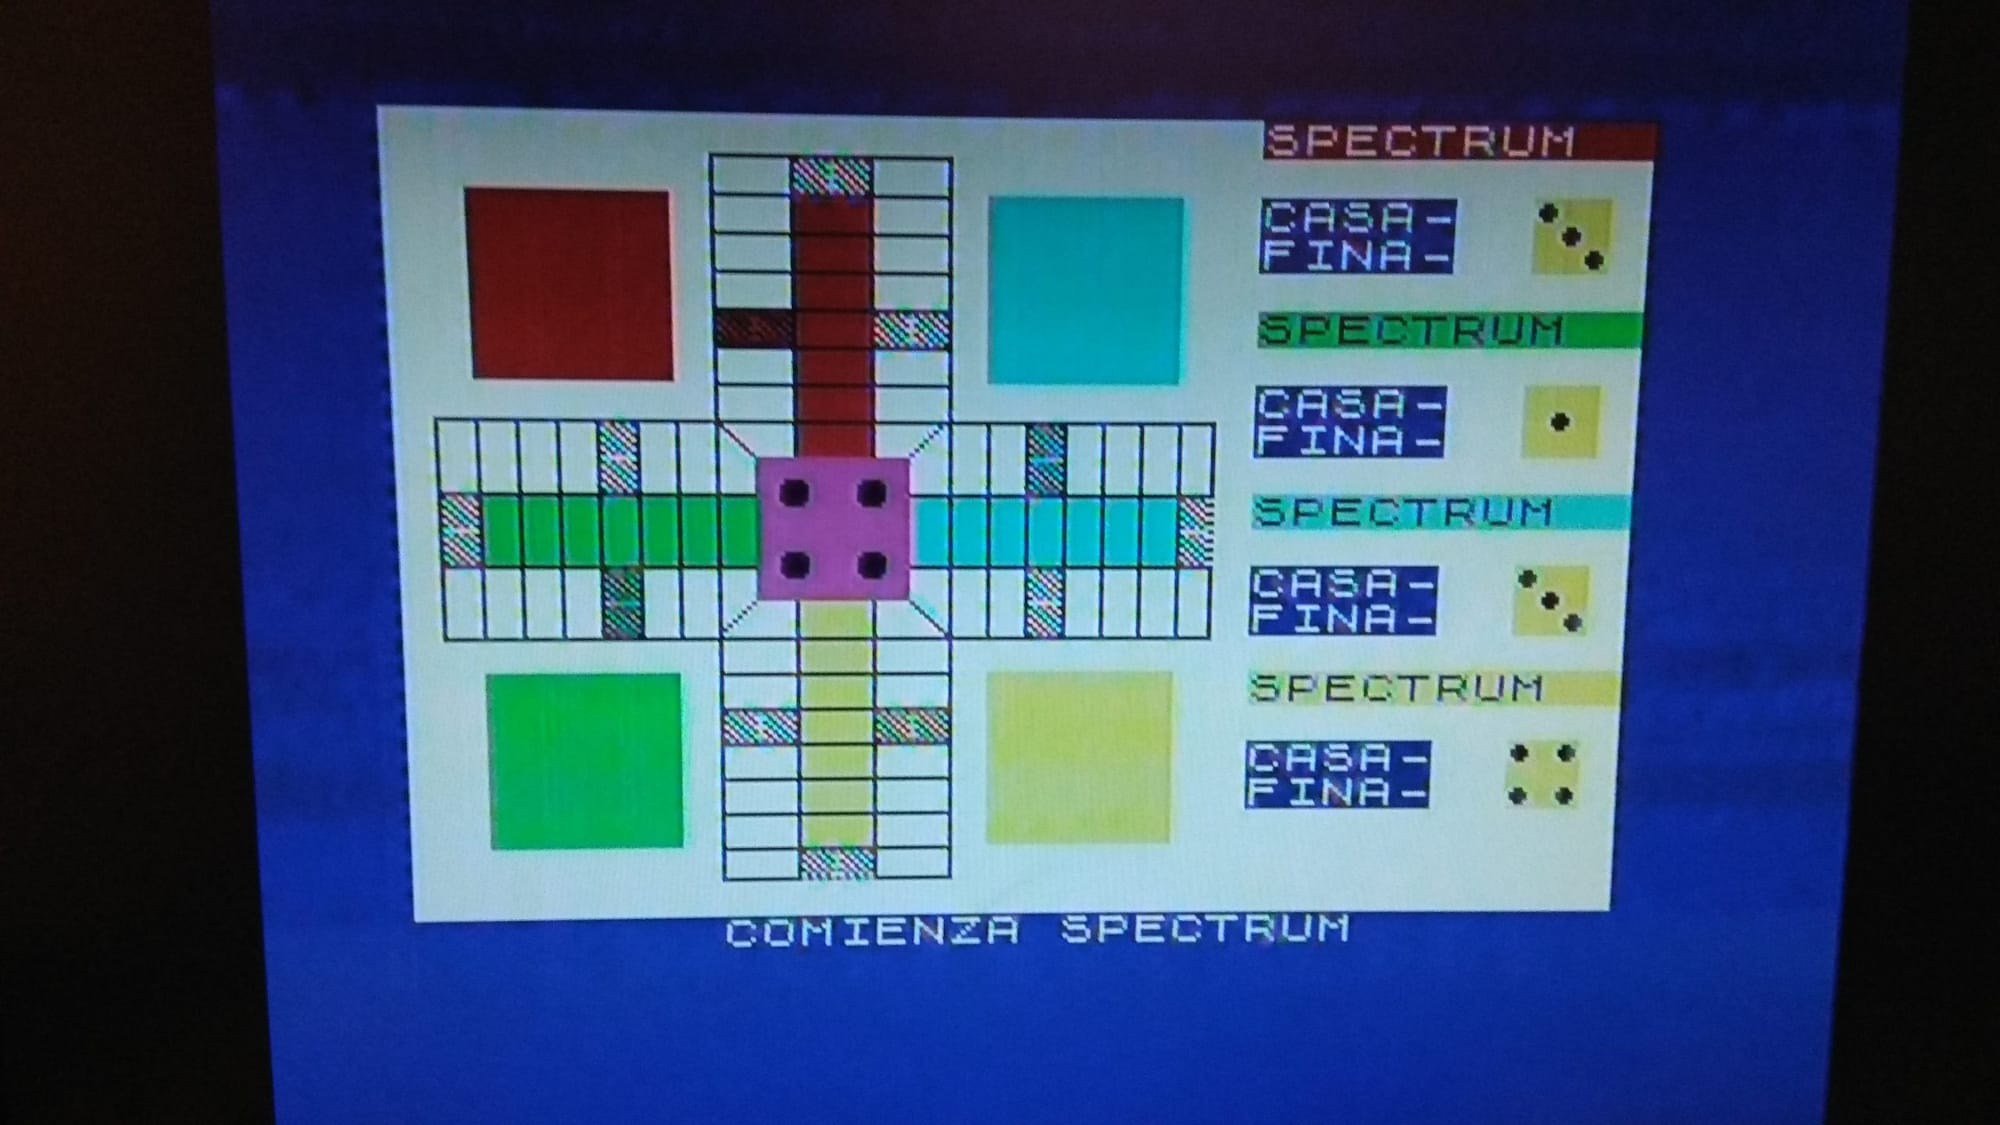 Spectrum imagen s-video s-VHS